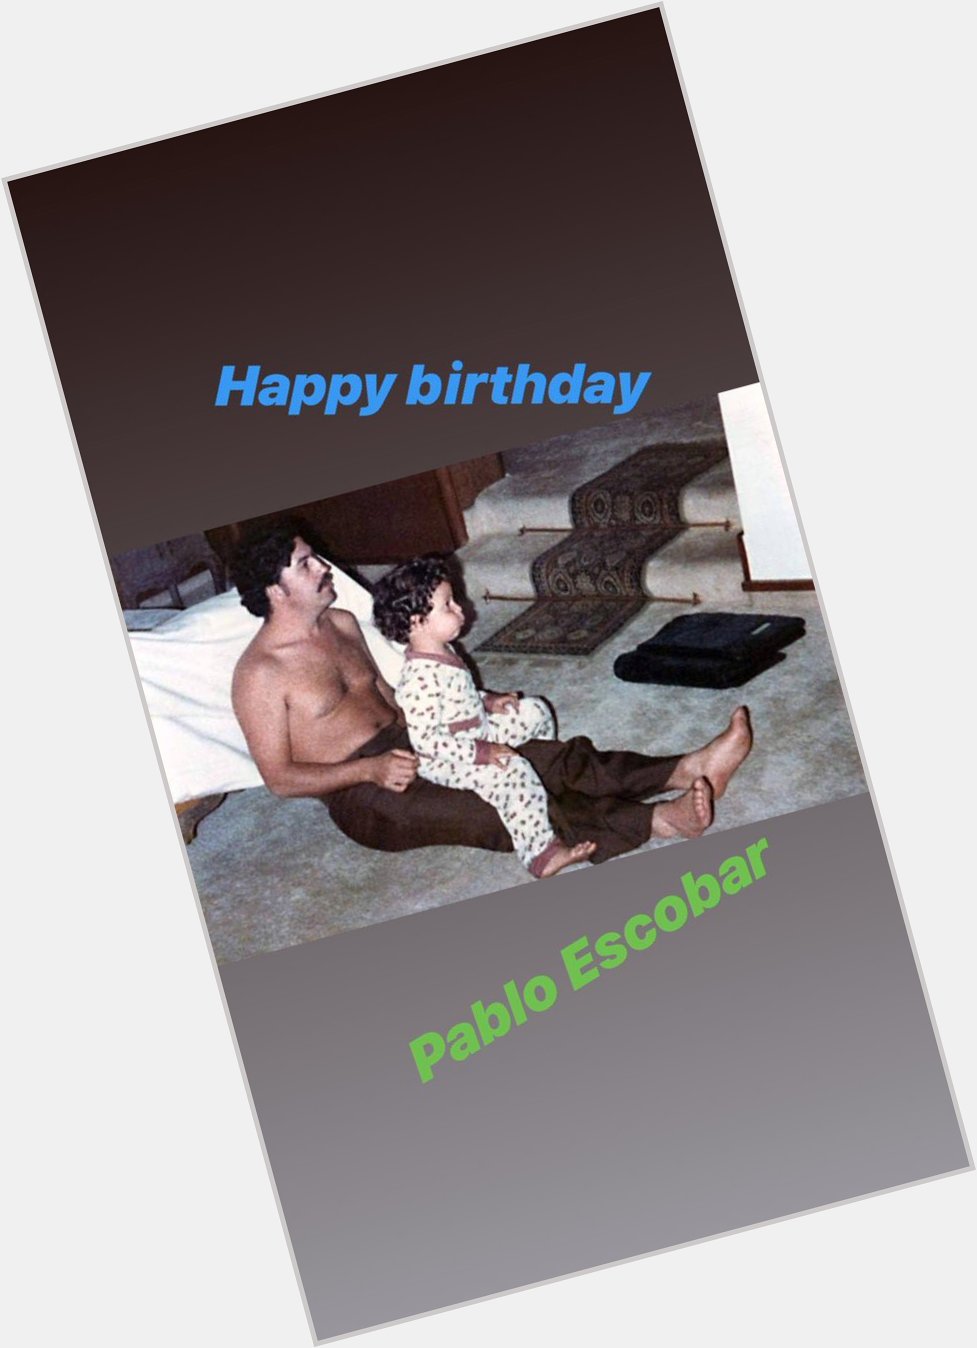 Happy birthday Pablo Escobar 